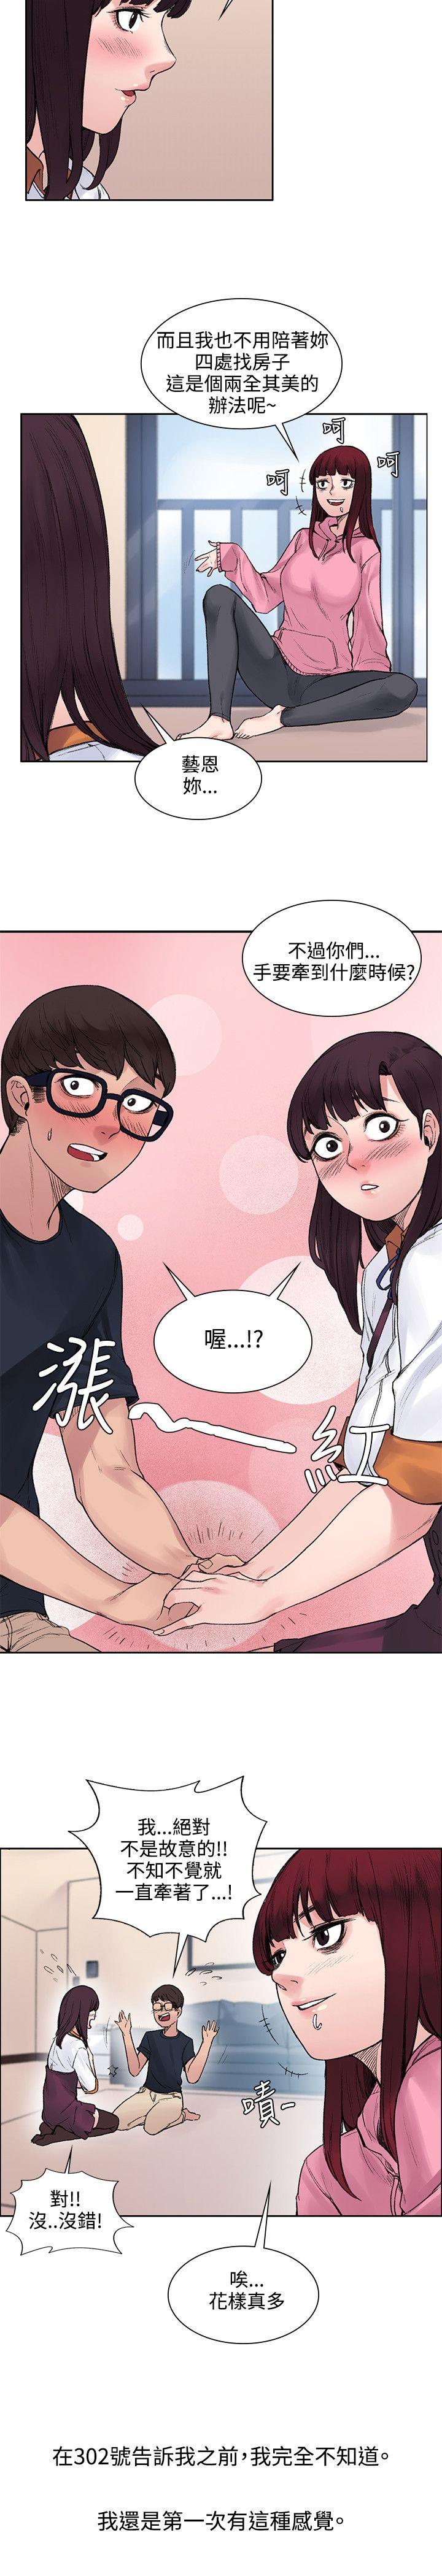 韩国污漫画 那裡的香氣 第12话 12